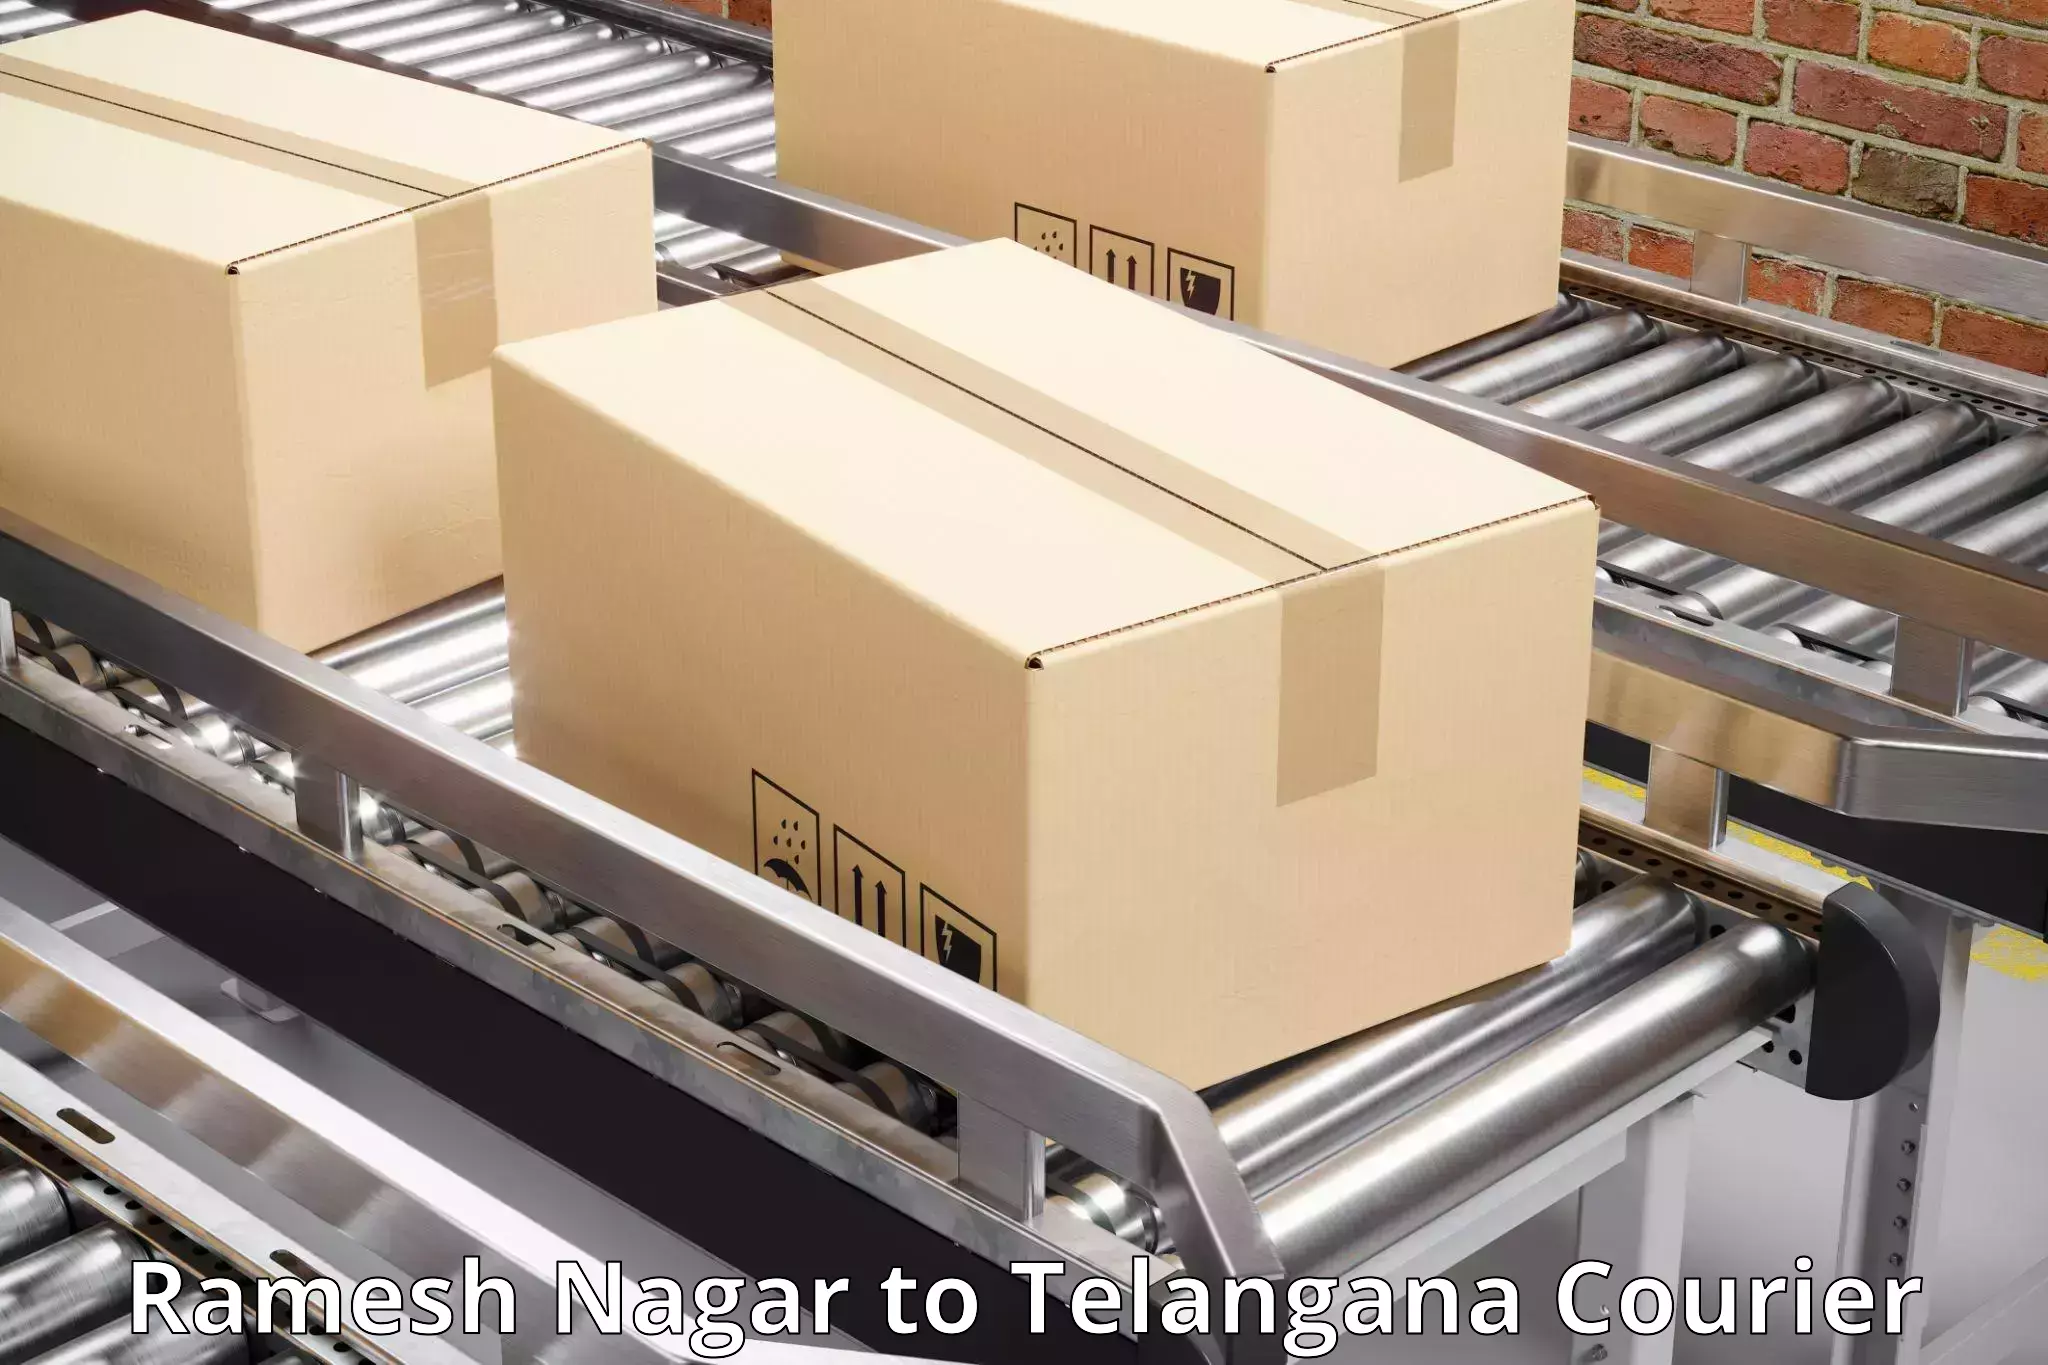 Courier services in Ramesh Nagar to Yerrupalem